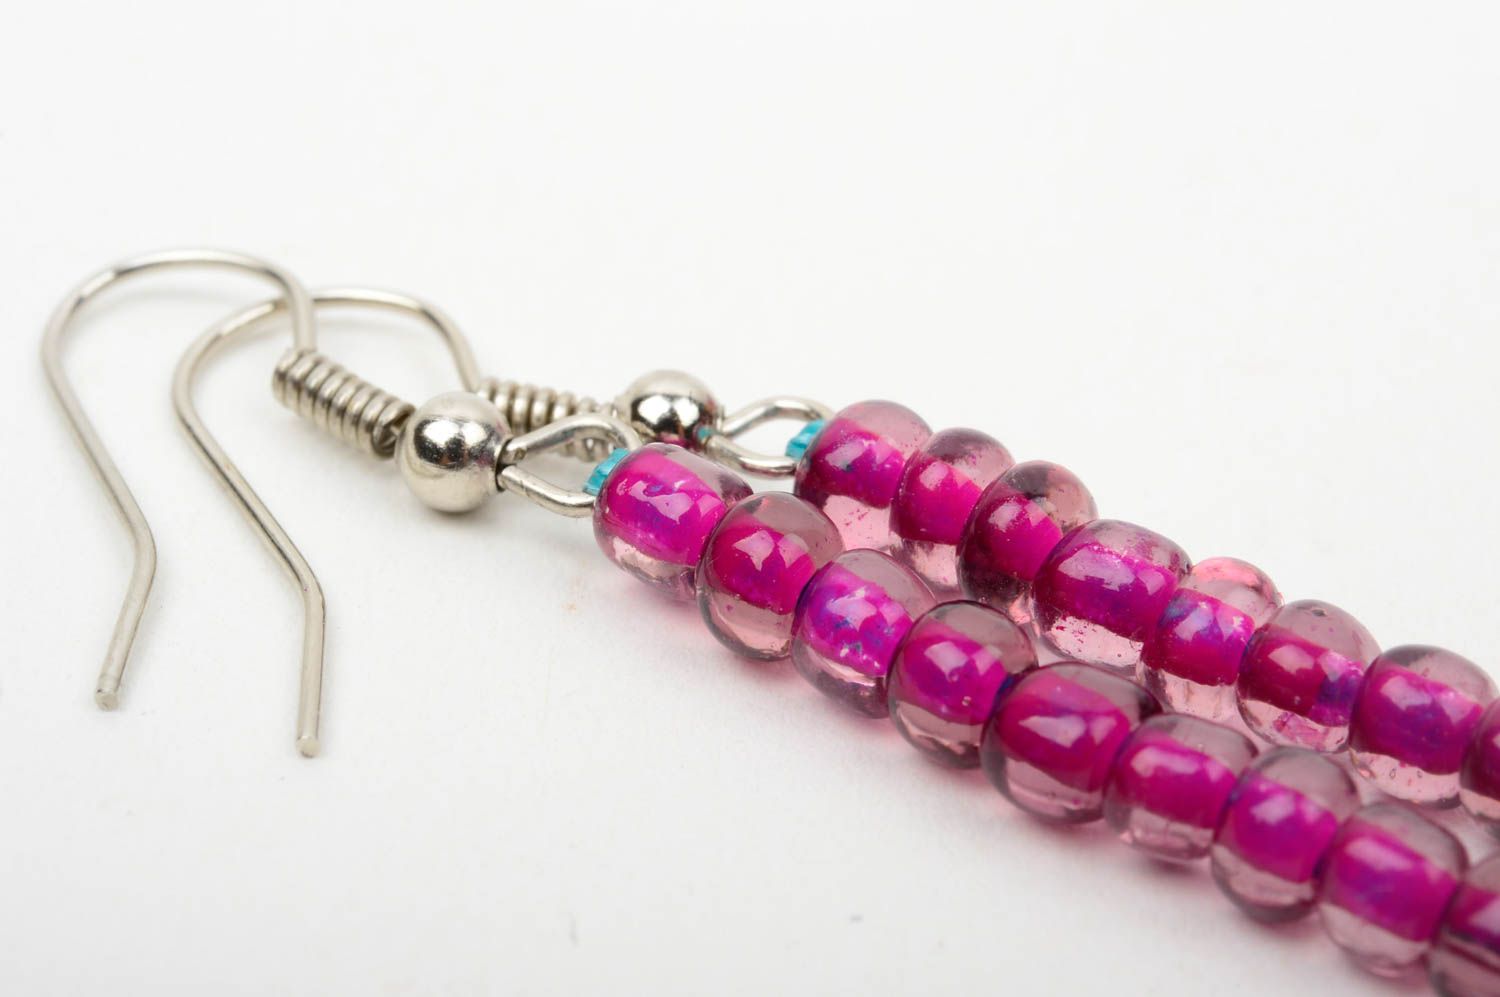 Handmade earrings designer earrings beads earrings for girl gift ideas photo 5